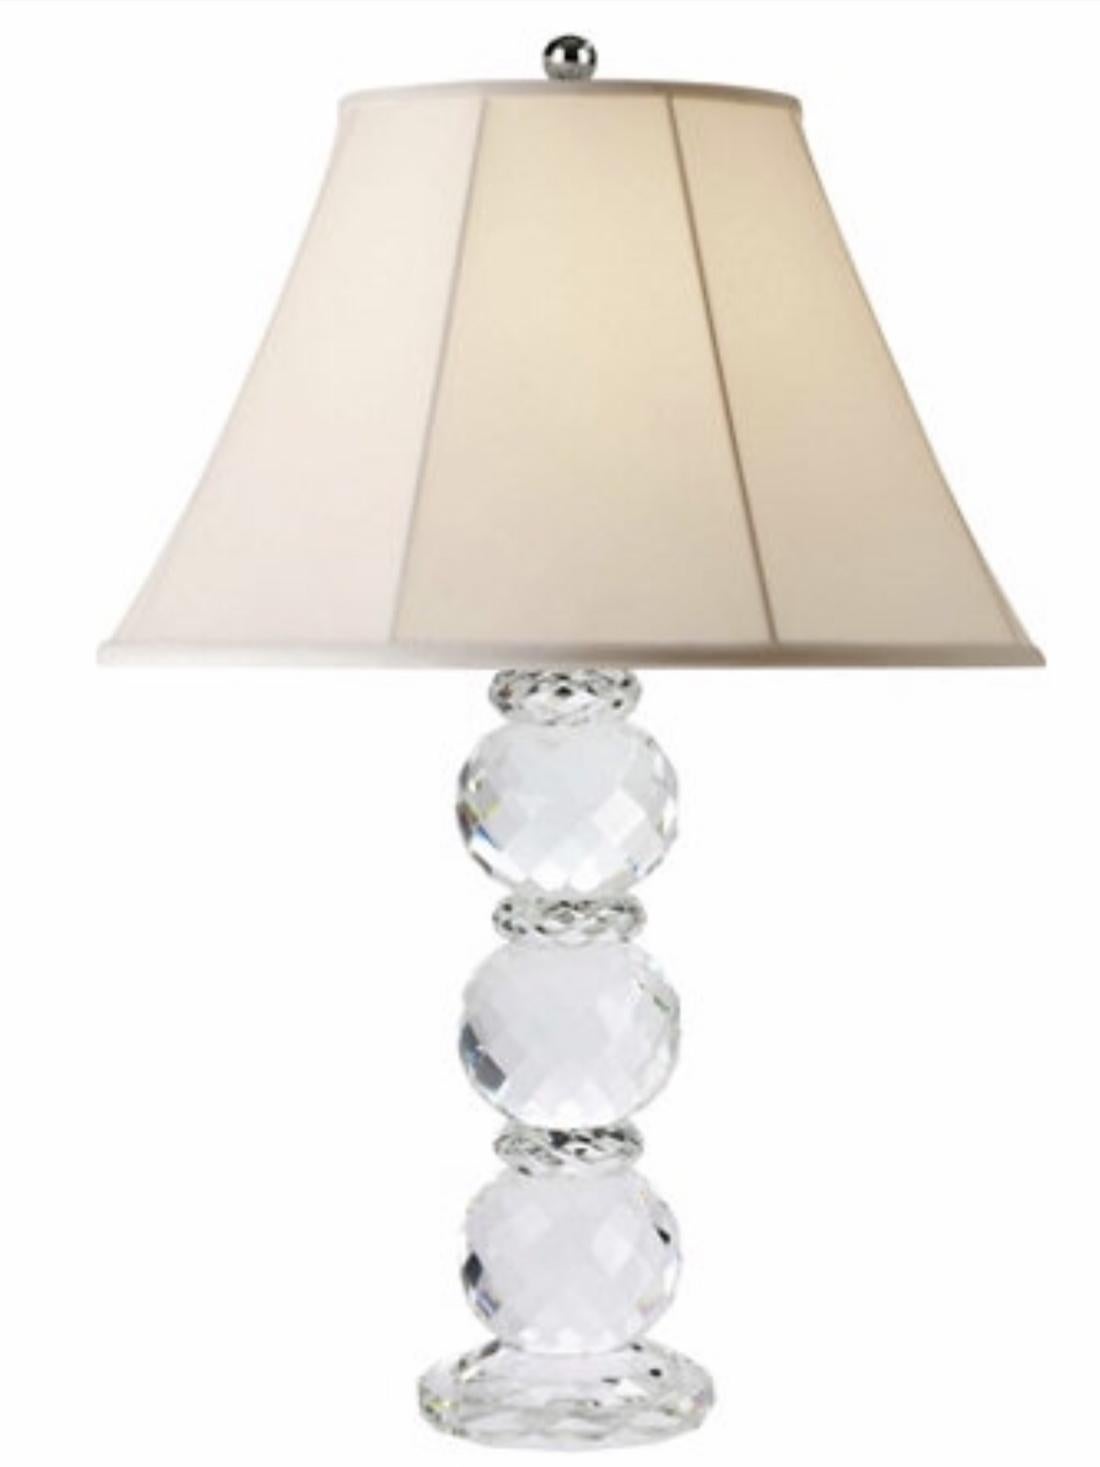 Cette lampe de table à facettes en cristal clair Ralph Lauren avec abat-jour en soie blanche fait partie de la collection Ralph Lauren Home et c'est une pièce élégante parfaite pour valoriser chaque pièce de votre maison.
Nous sommes revendeurs